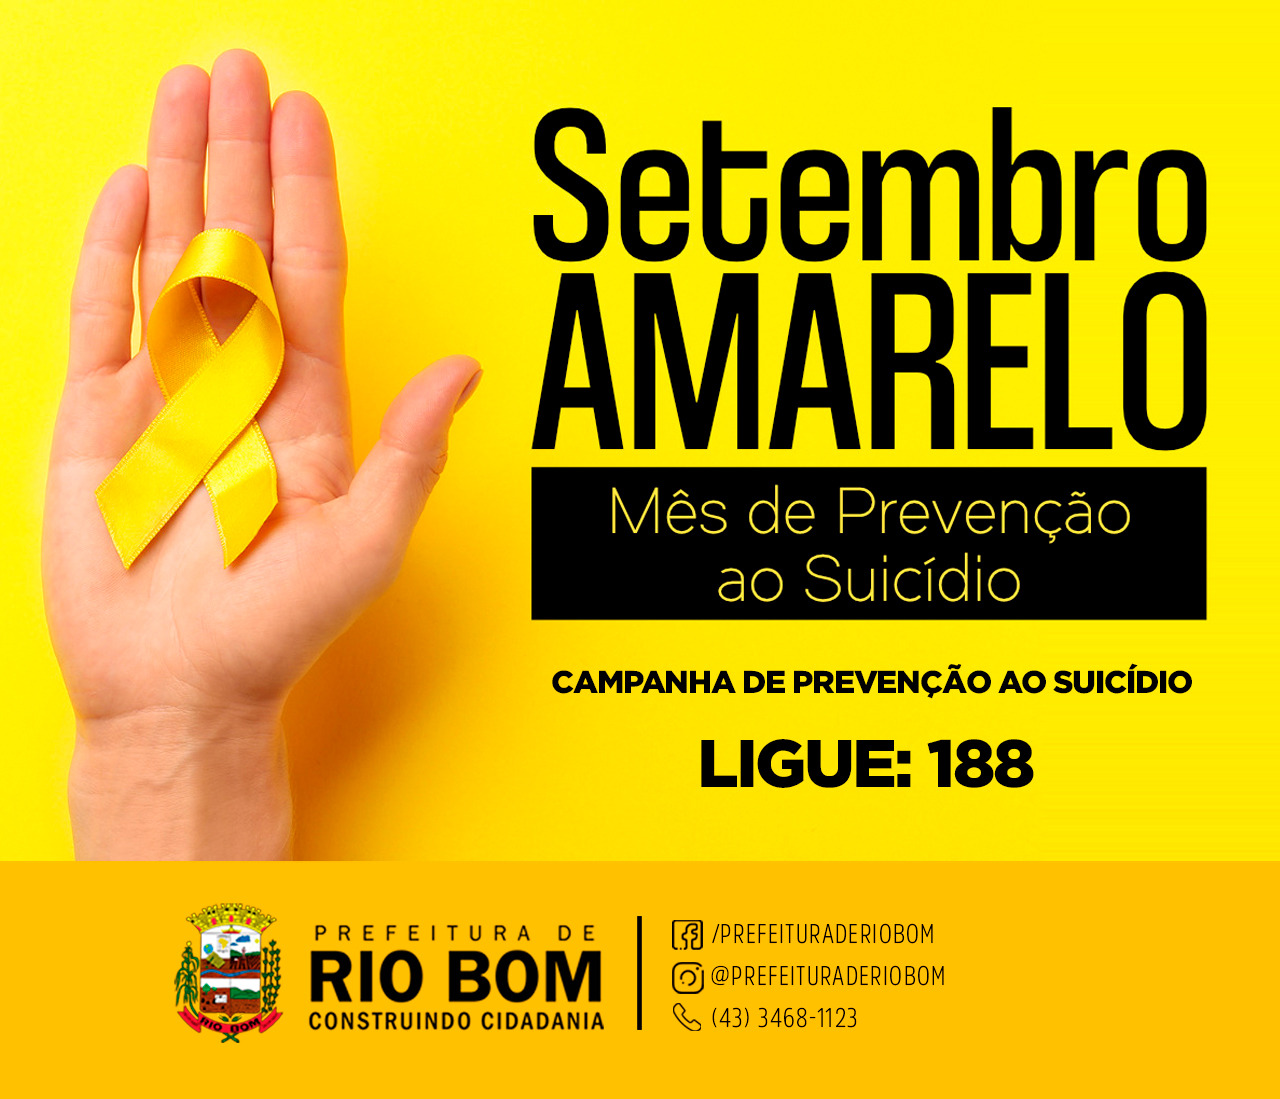 RIO BOM - Mês de prevenção ao Suicídio